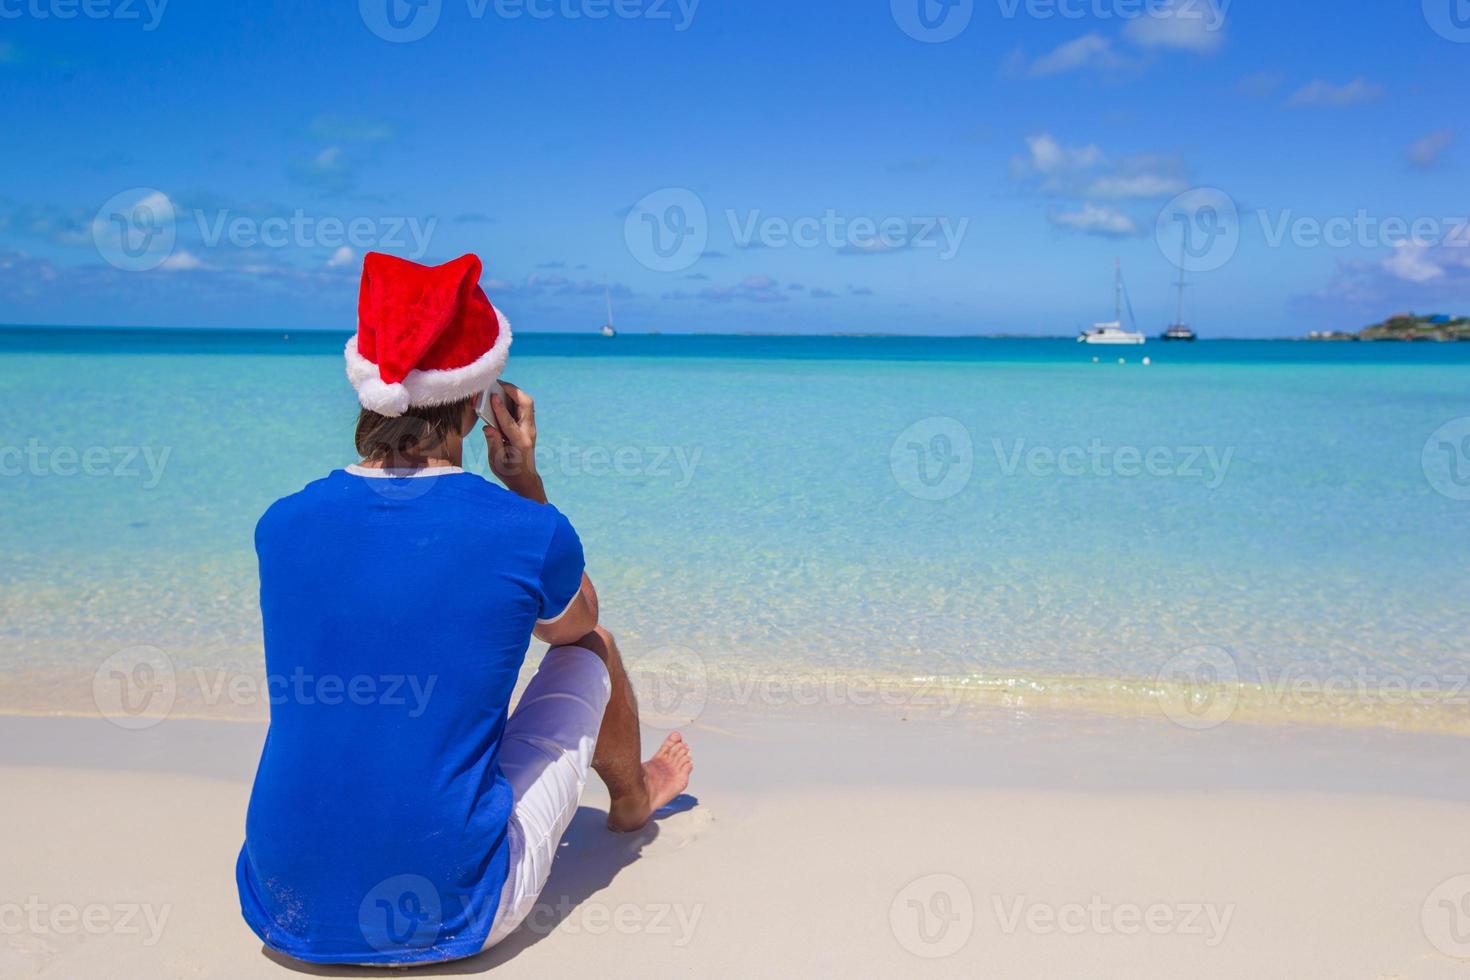 Rückansicht des jungen Mannes in Weihnachtsmütze mit Telefon am tropischen karibischen Strand foto